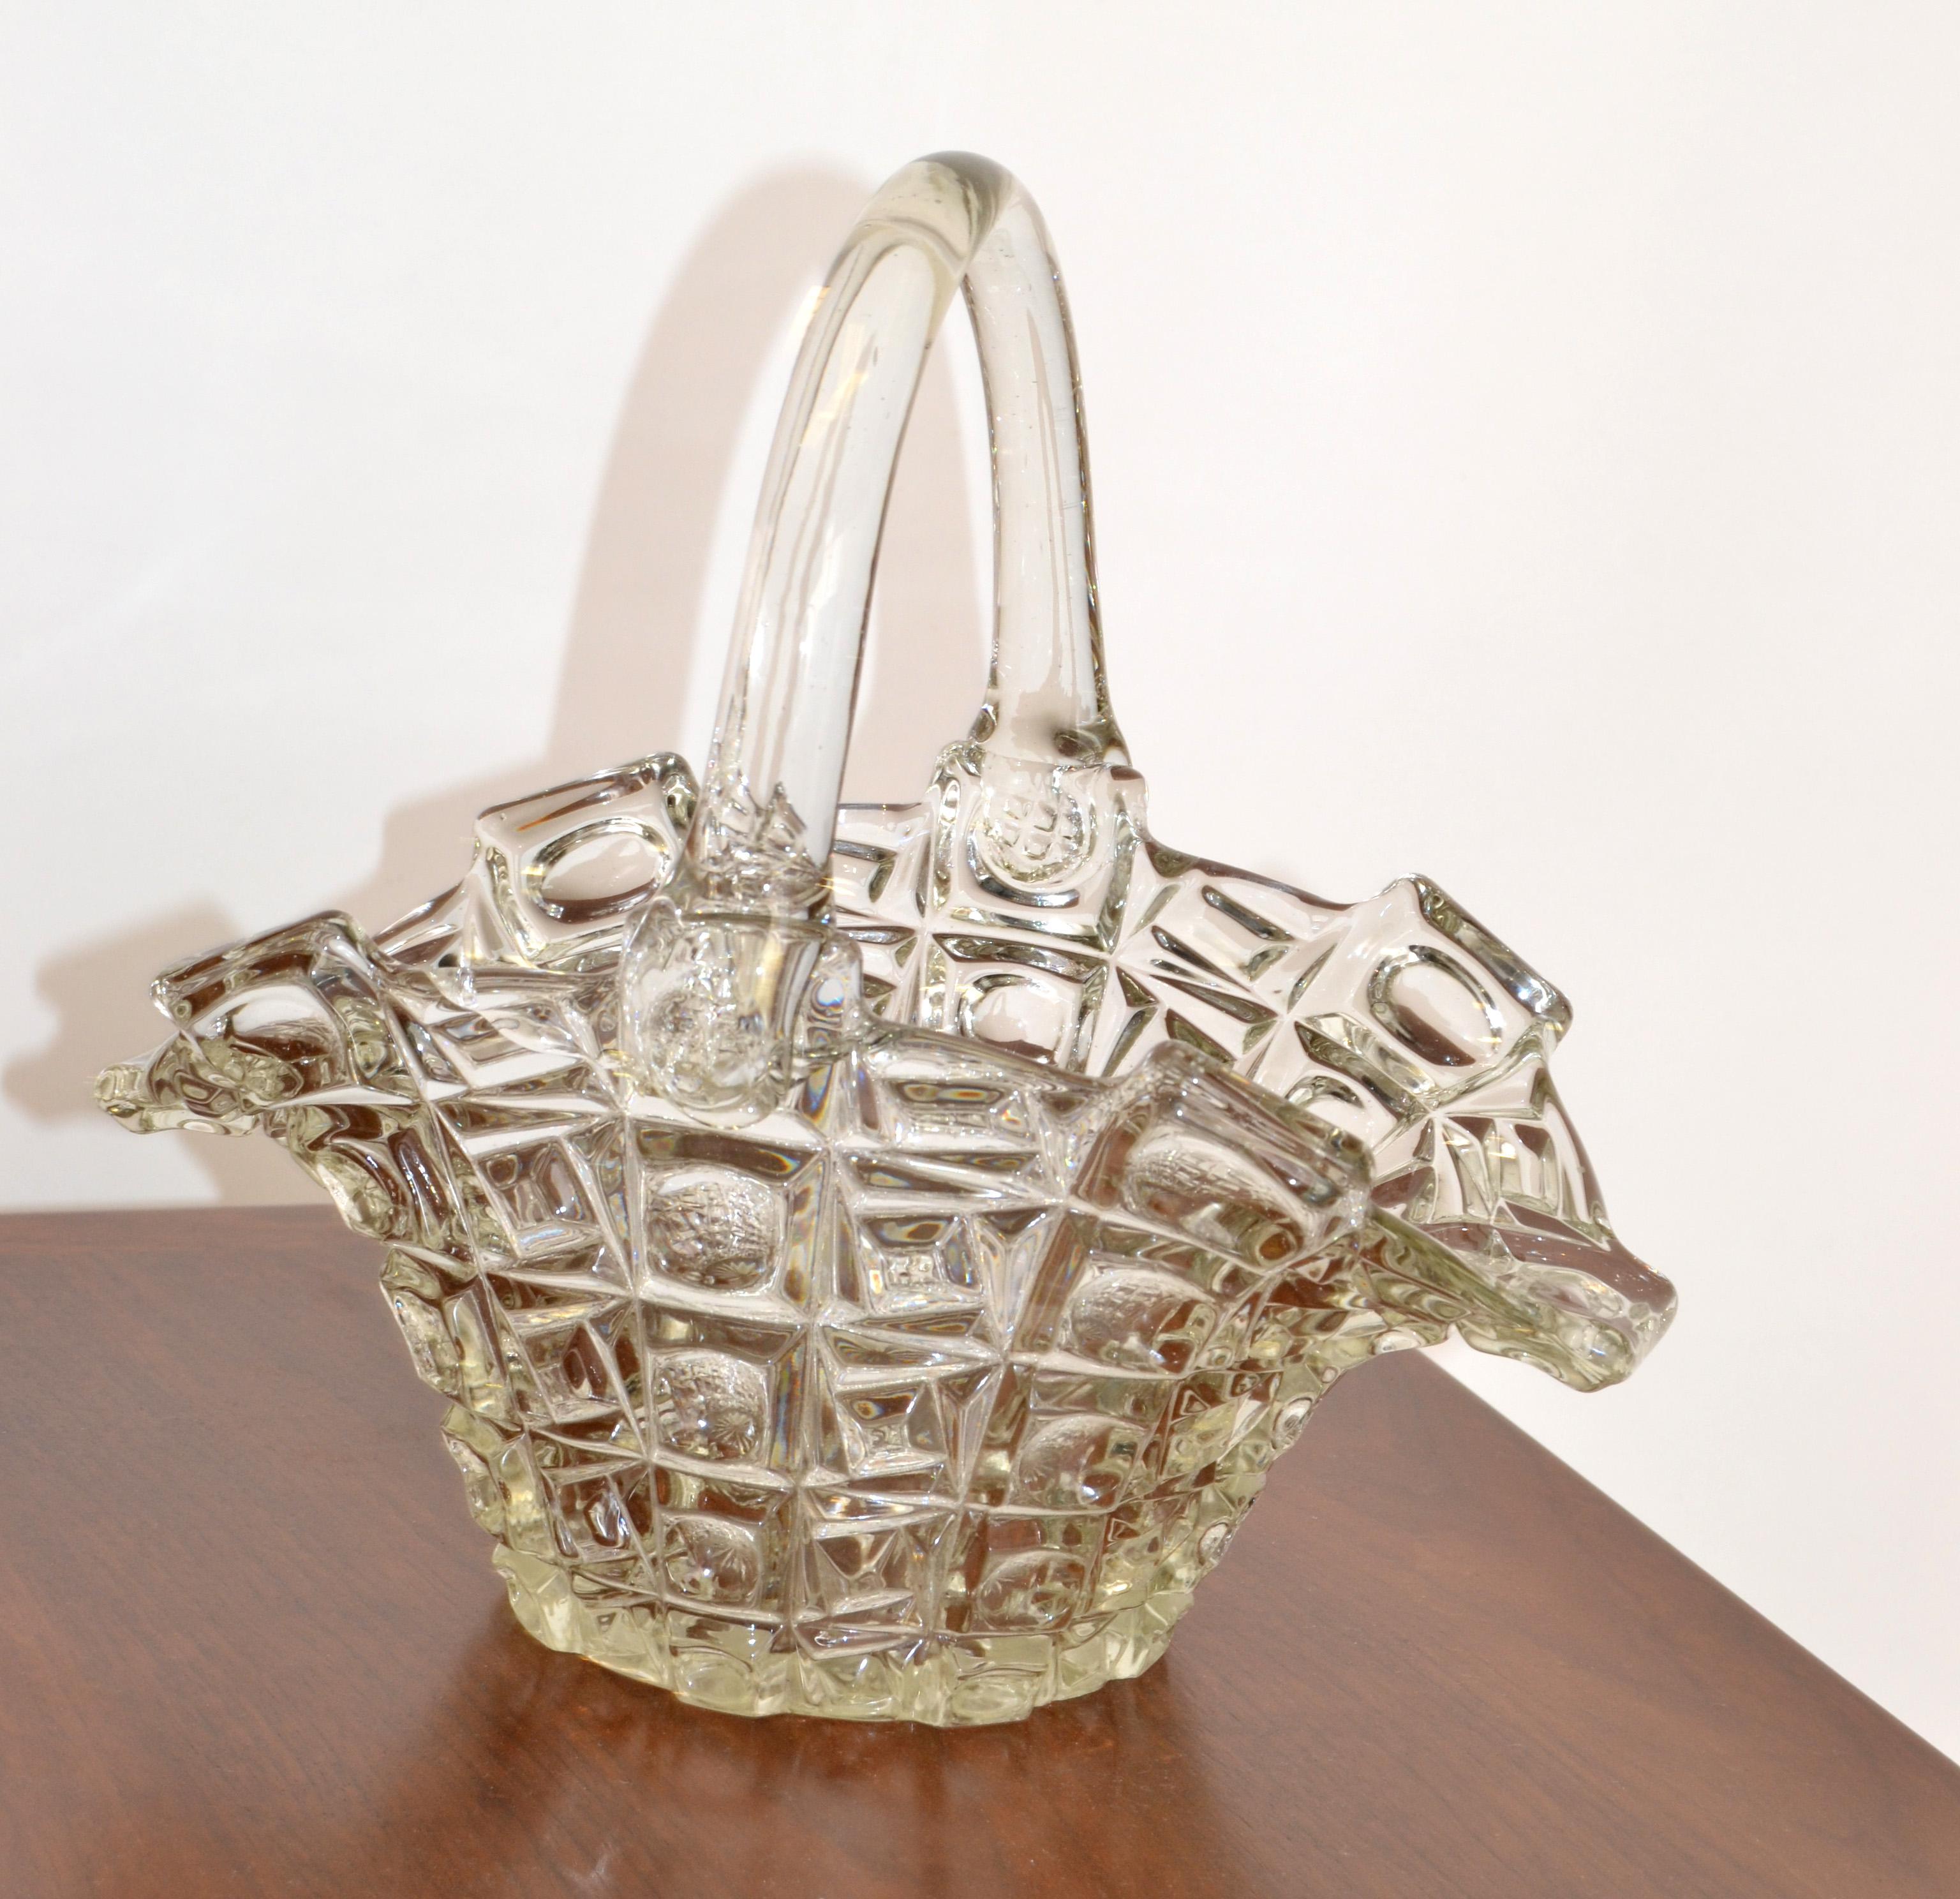 Vintage 1970er Jahre transparentes Kristallglas Korb mit Griff für eine Braut, Blumen, Obst oder als Centerpiece mit Ihren Lieblings-Snacks.
Insgesamt in sehr gutem Zustand.